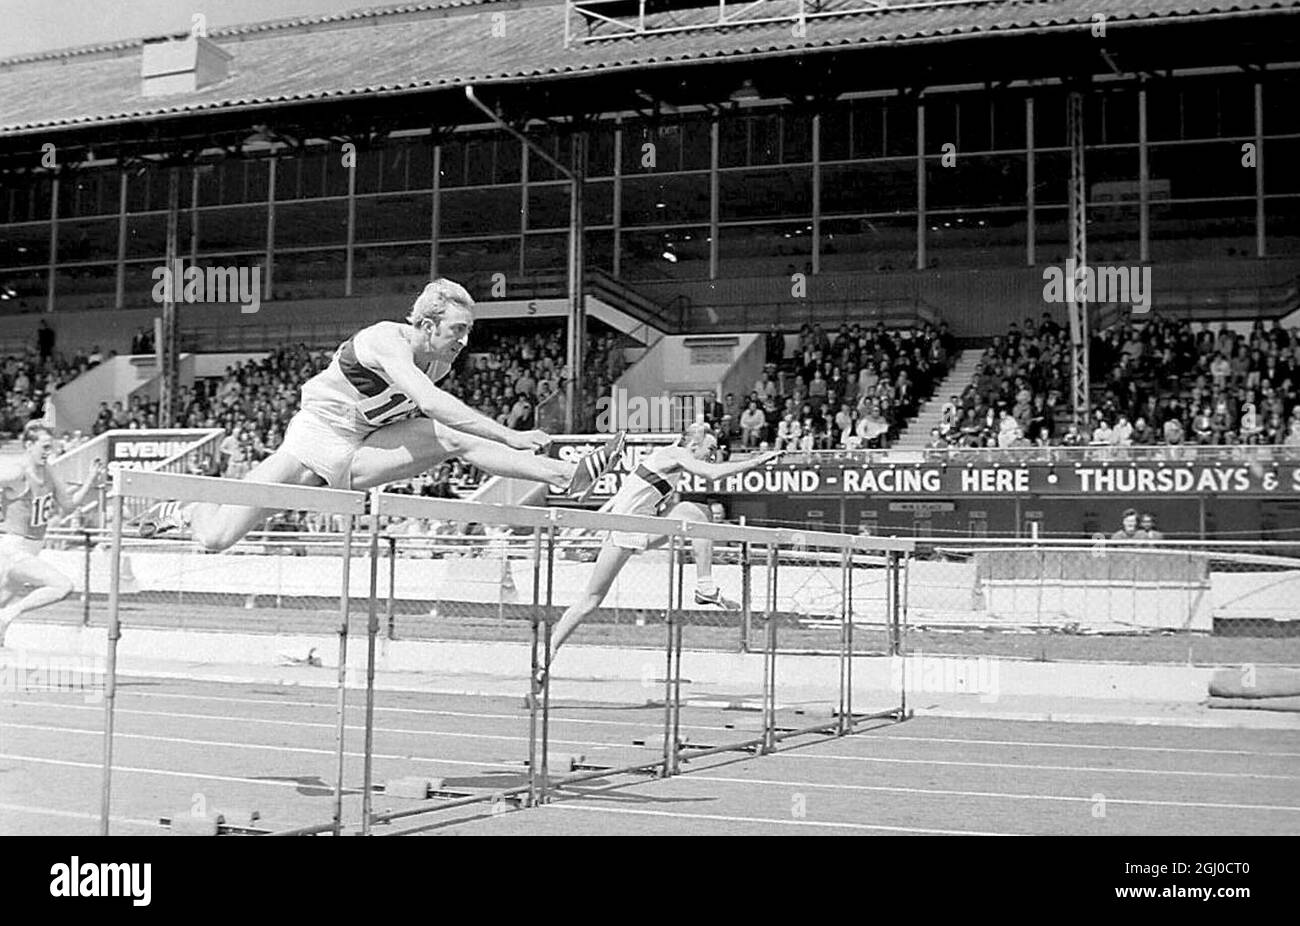 London David Hemery of Gloucestershire il campione olimpico di 400m ostacoli si sbatte oltre l'ultimo ostacolo per andare avanti e vincere la finale di 110 m ostacoli ai Campionati Inter City al White City Stadium di Londra. 26 maggio 1969 Foto Stock